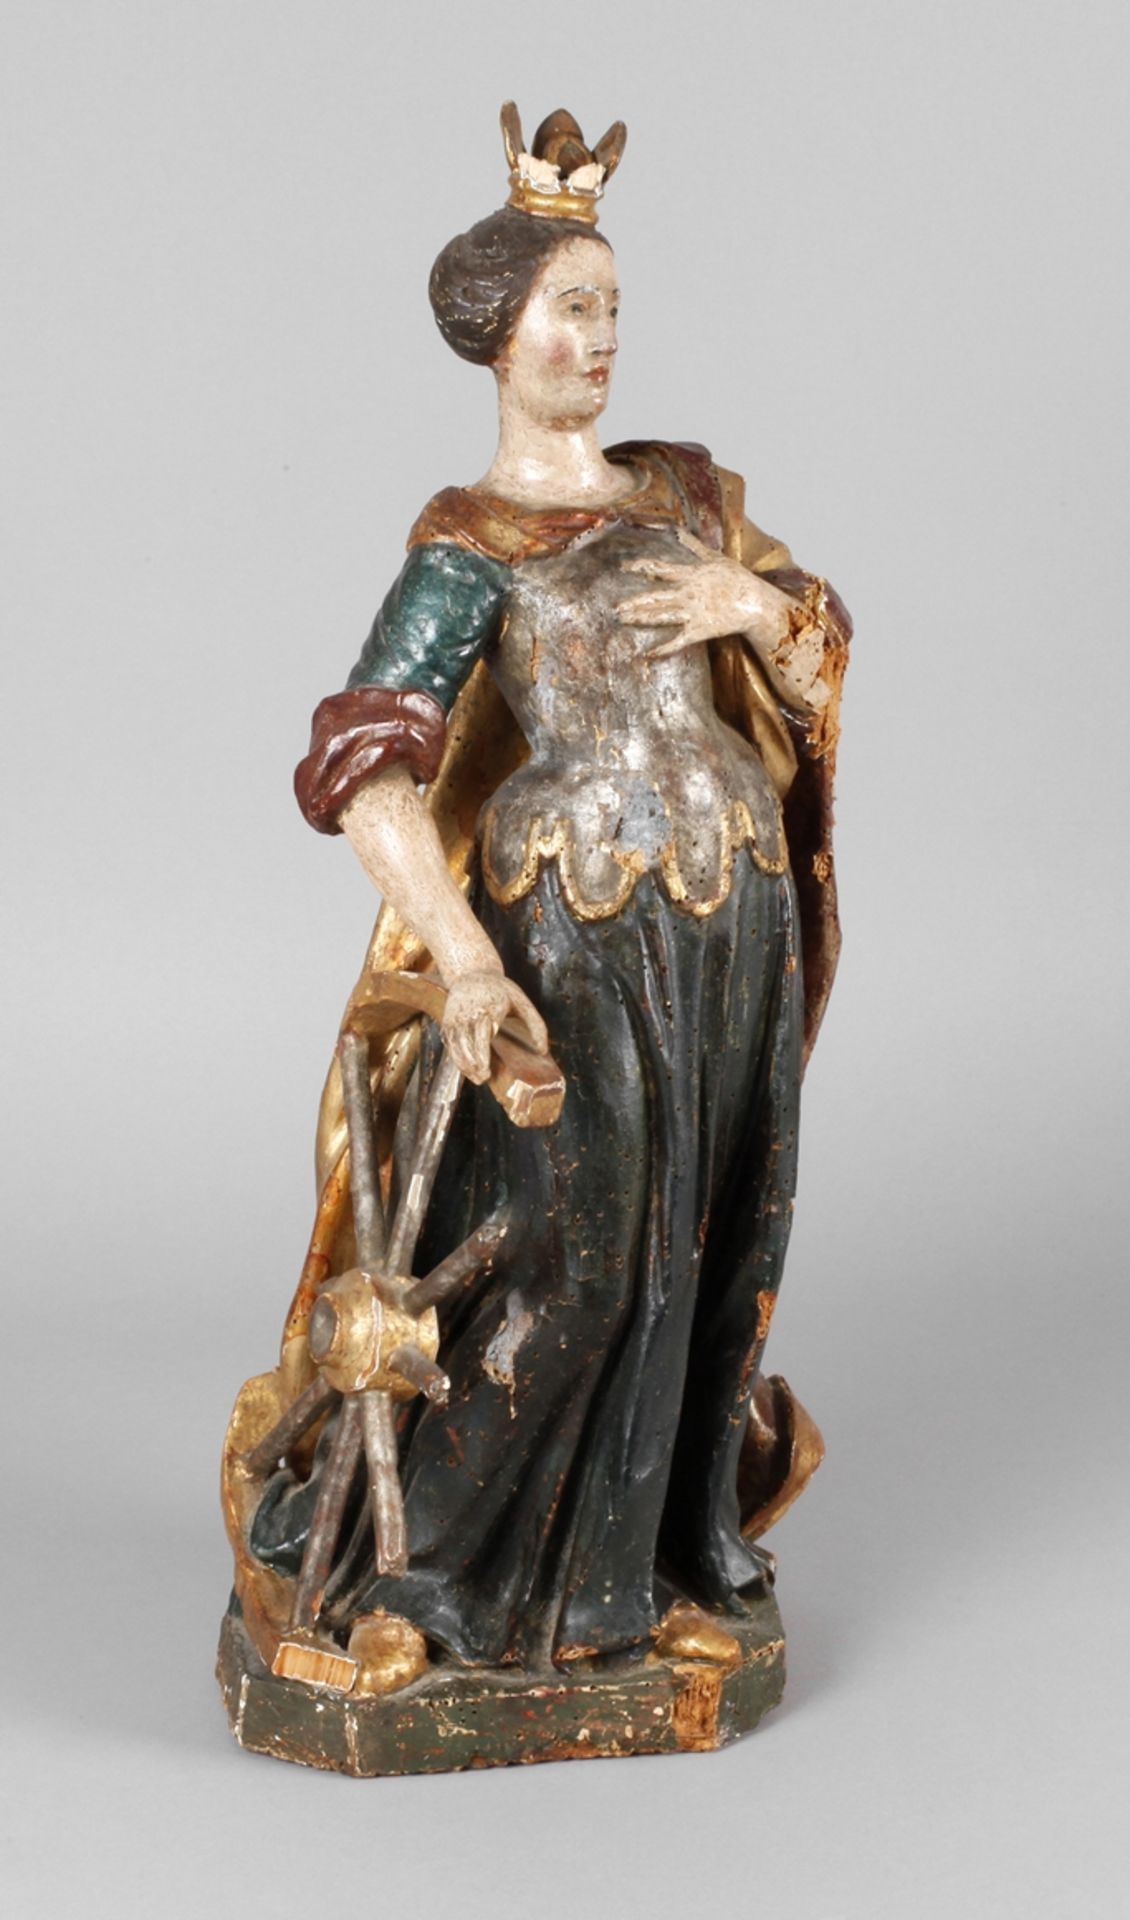 Geschnitzte Heiligenfigur Barock 18. Jh., Holz geschnitzt, kreidegrundiert, mehrfarbig gefasst und